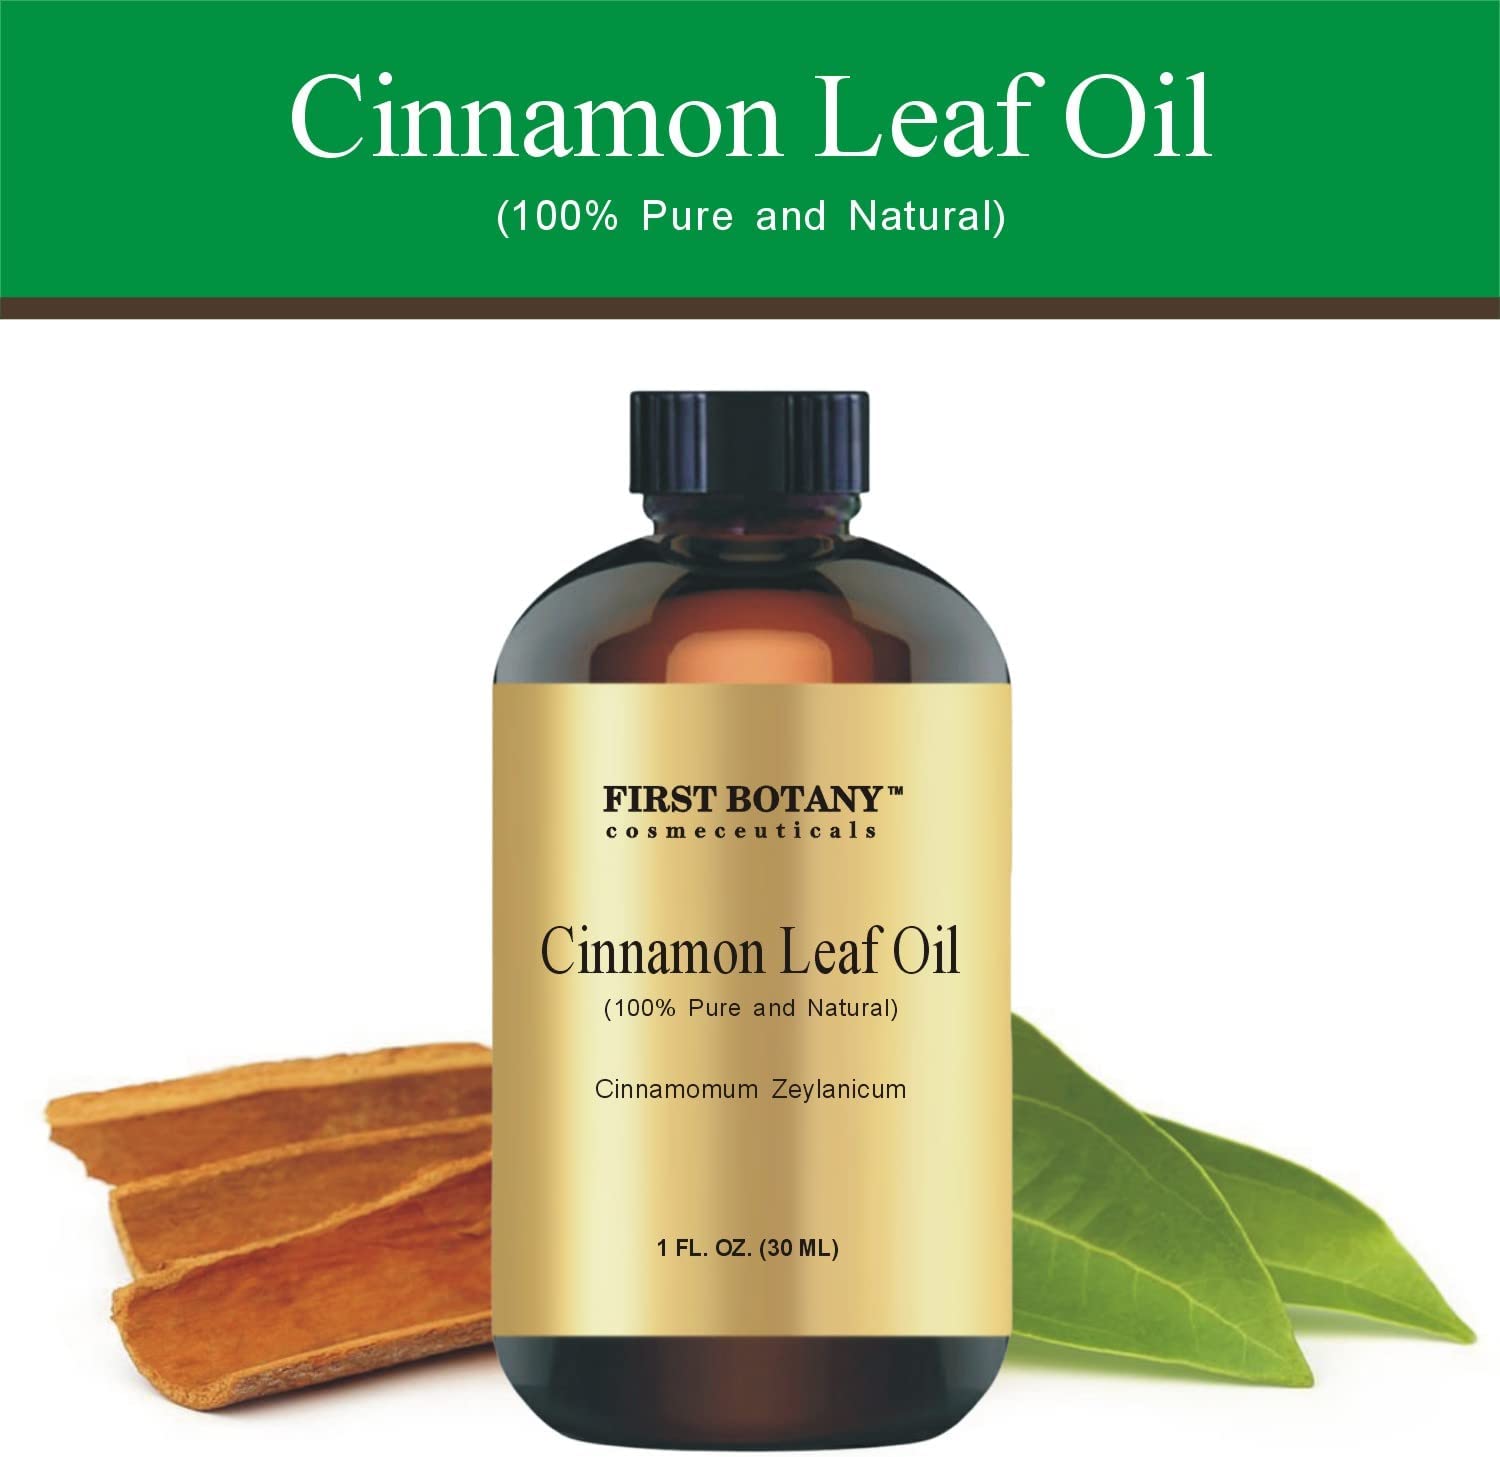 100% Pure Cinnamon Essential Oil - Premium Cinnamon Oil for